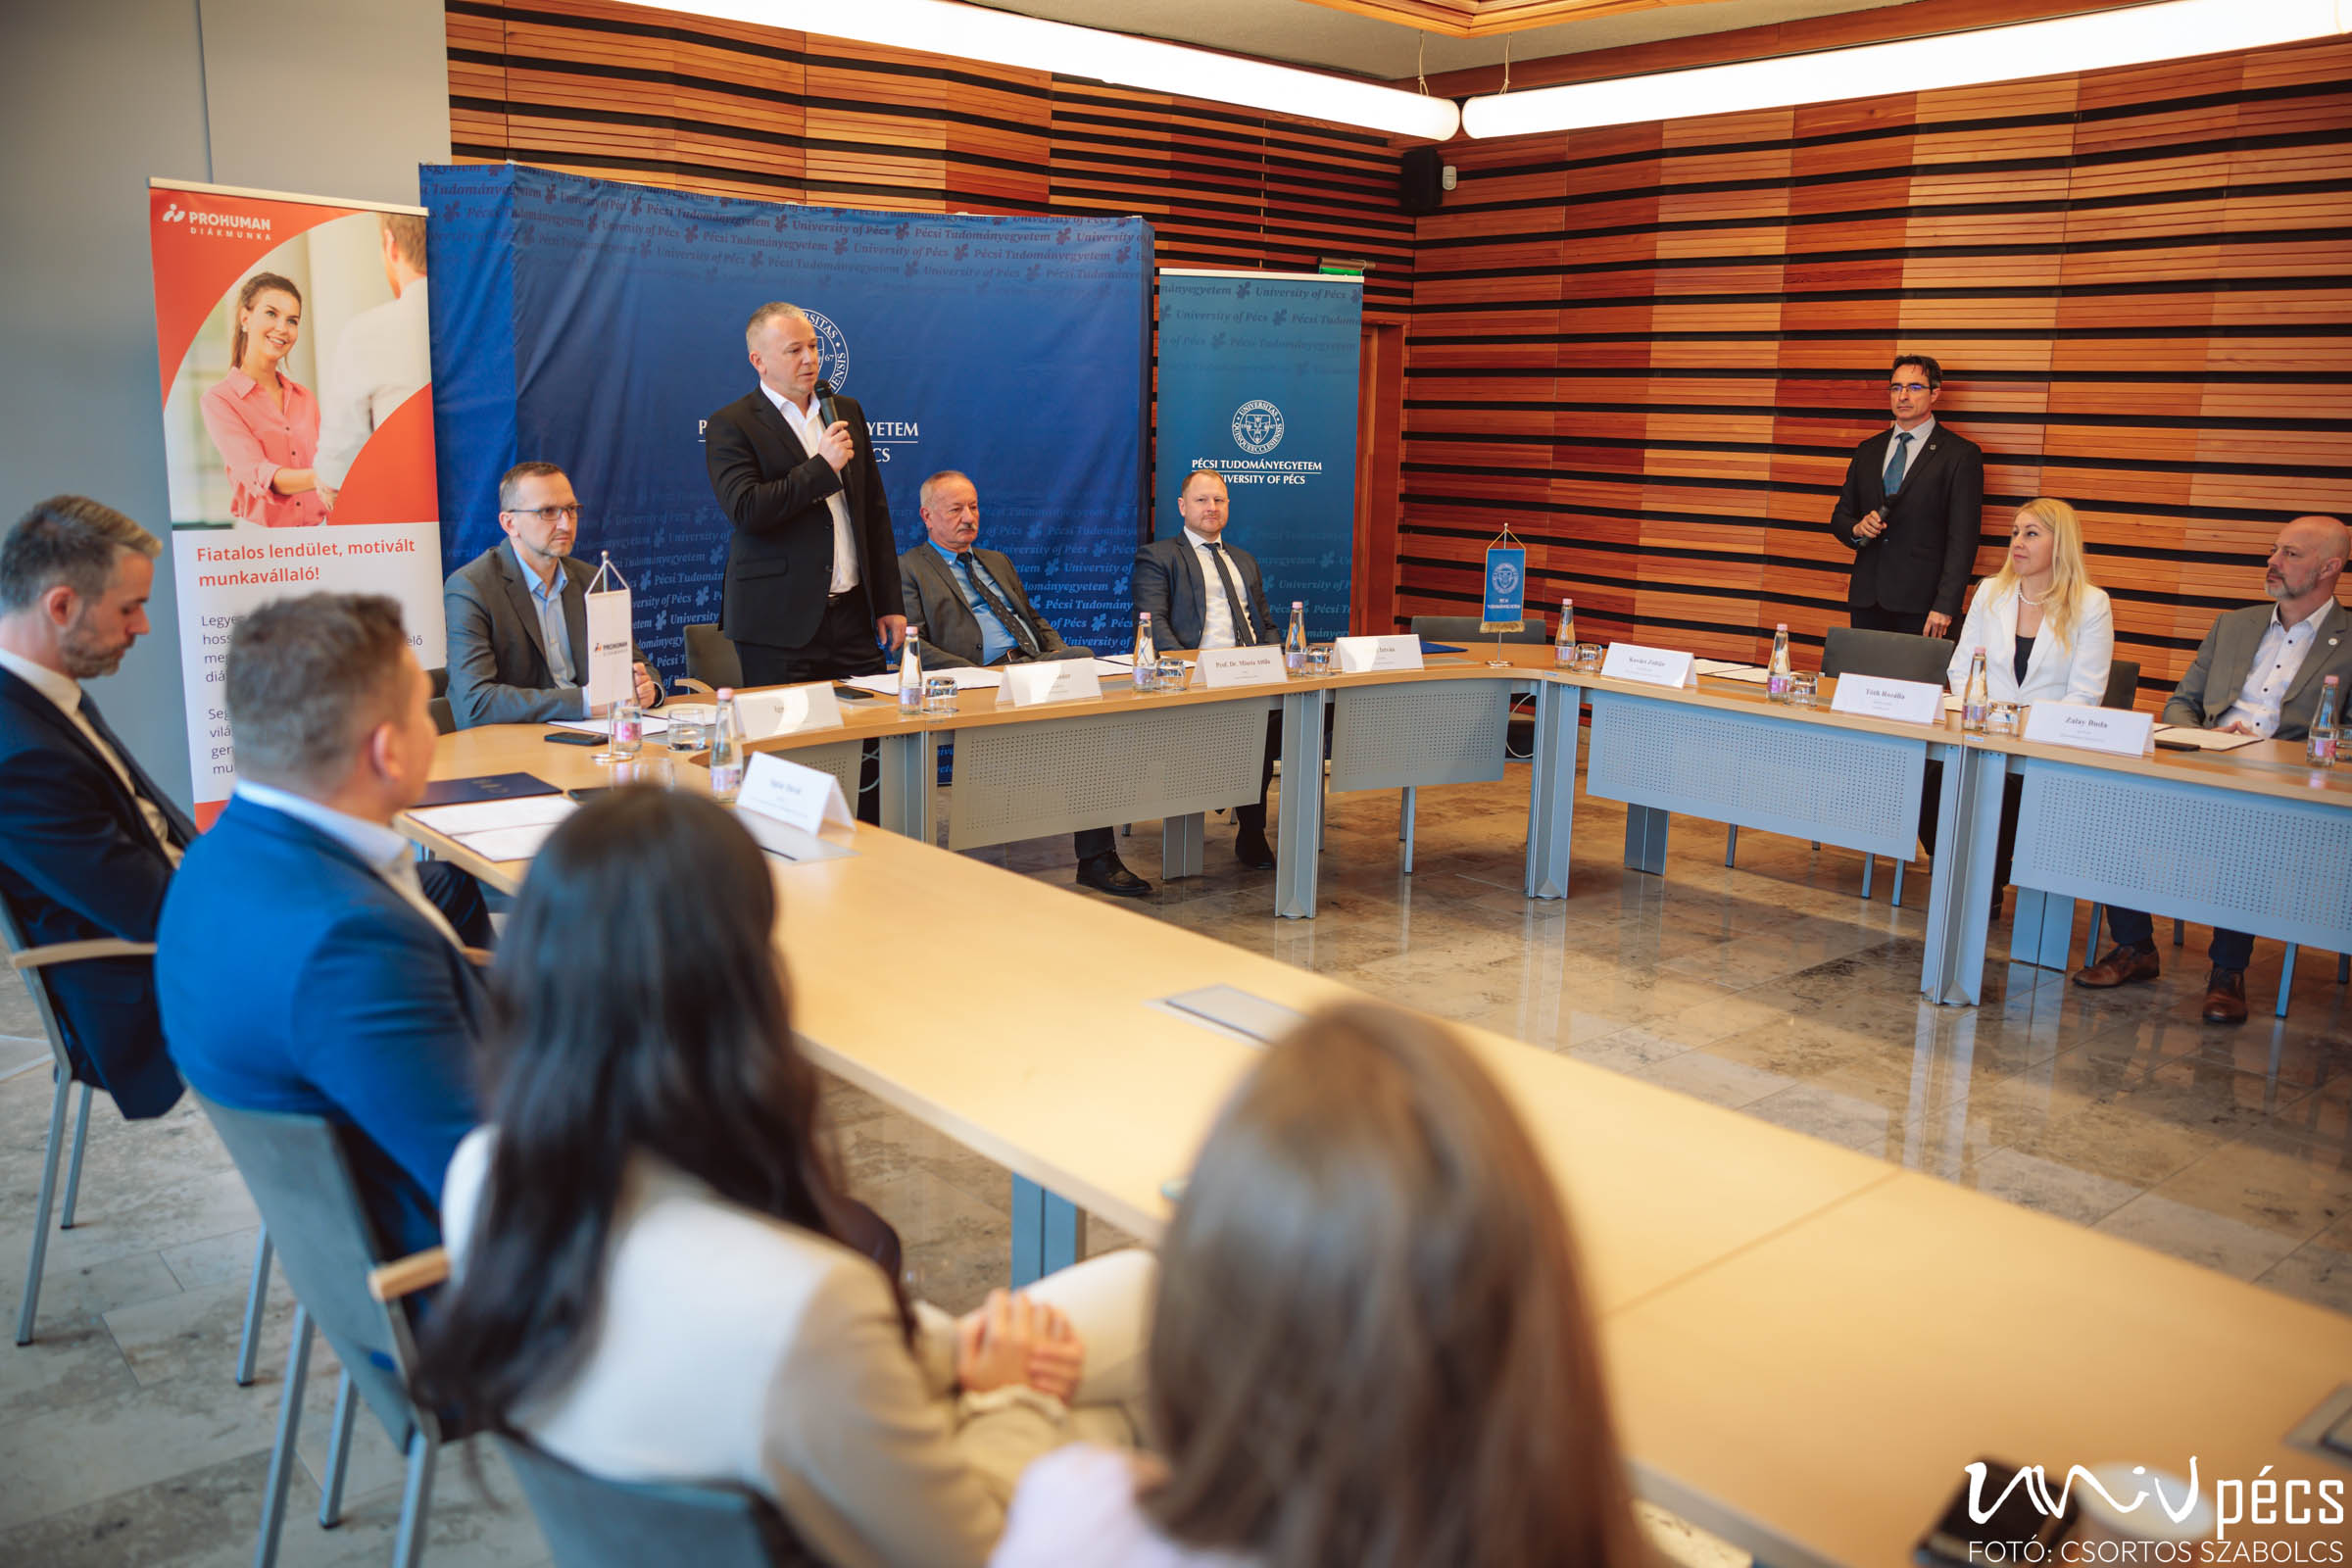 Die Firmengruppe Prohuman erweitert die Kooperation mit der Universität Pécs